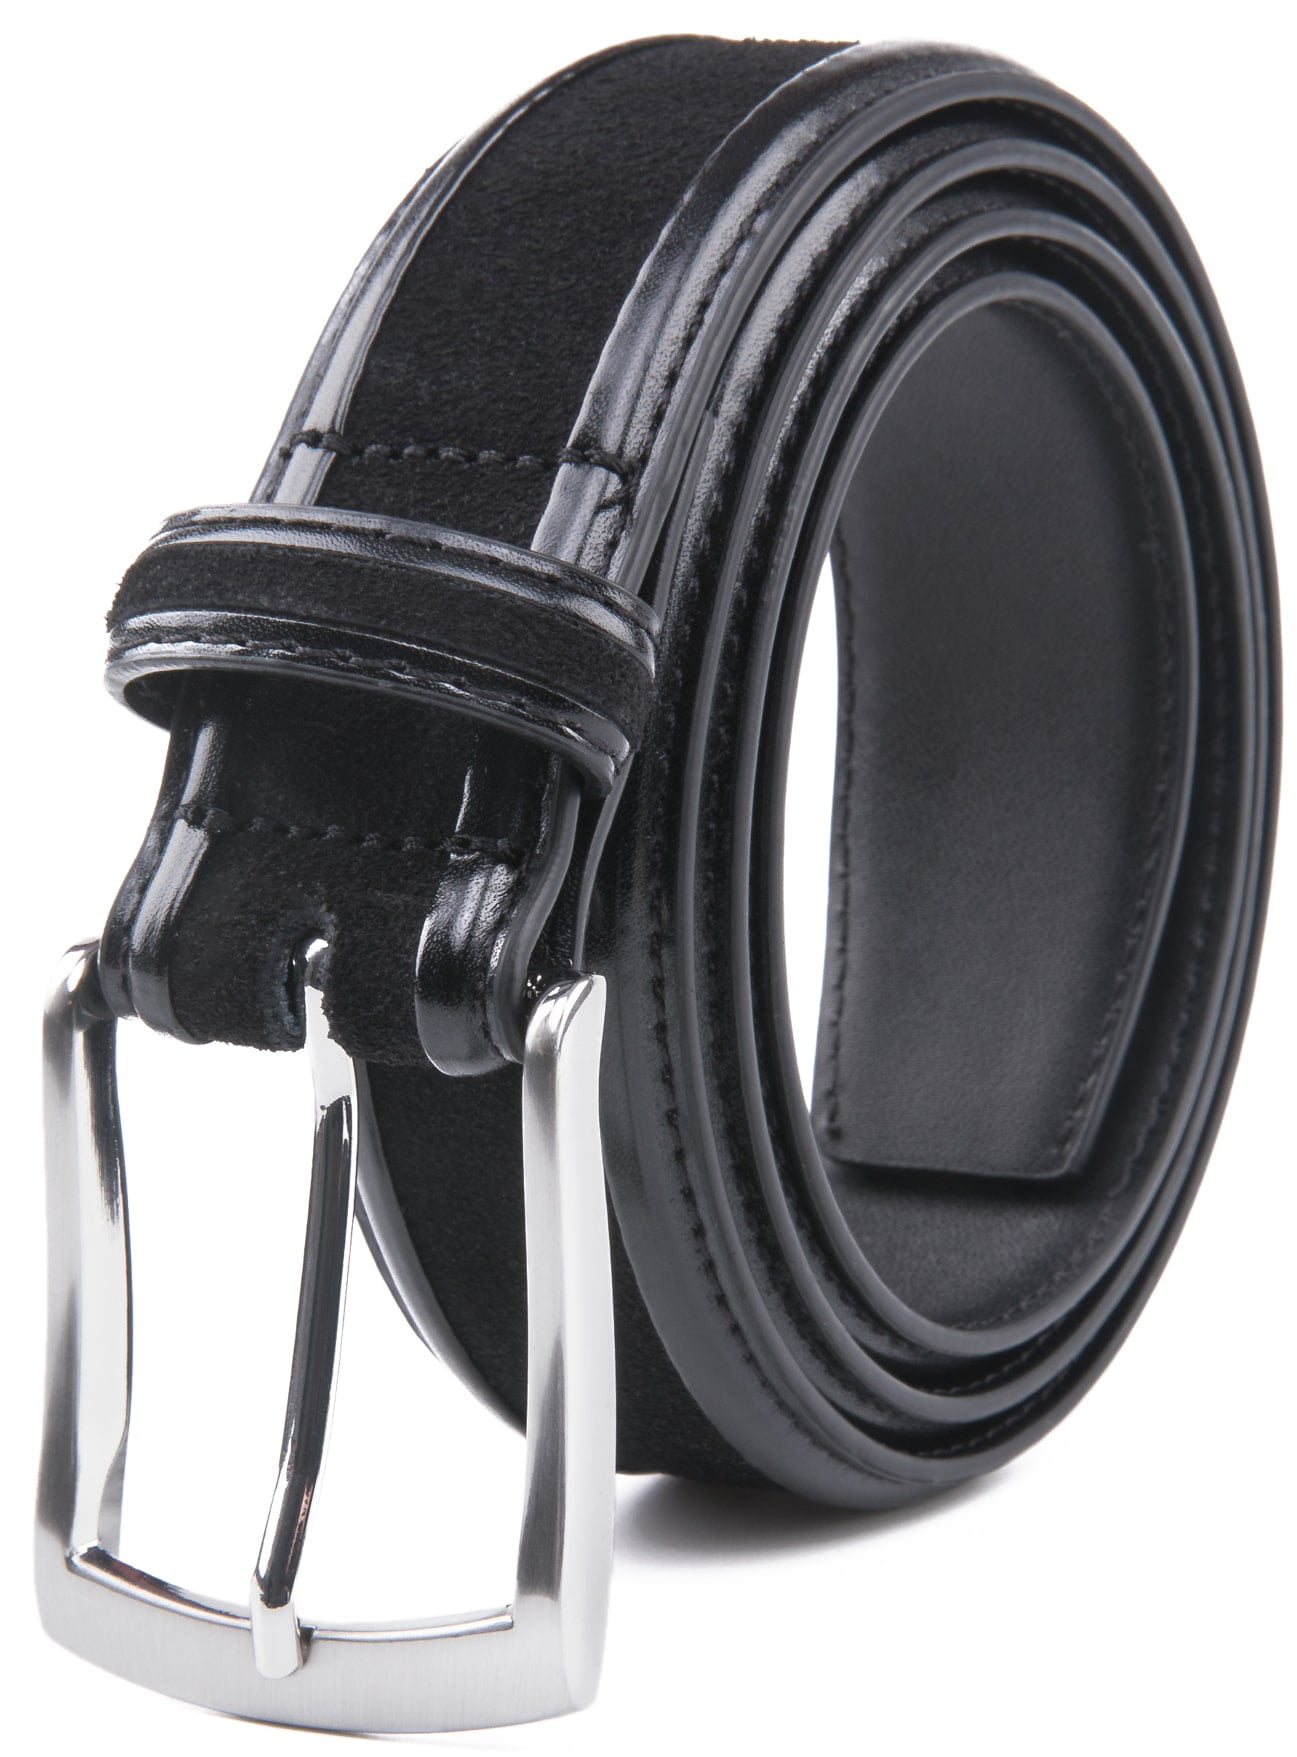 Access Denied - Genuine Leather & Suede Dress Belts For Men - Mens Belt ...